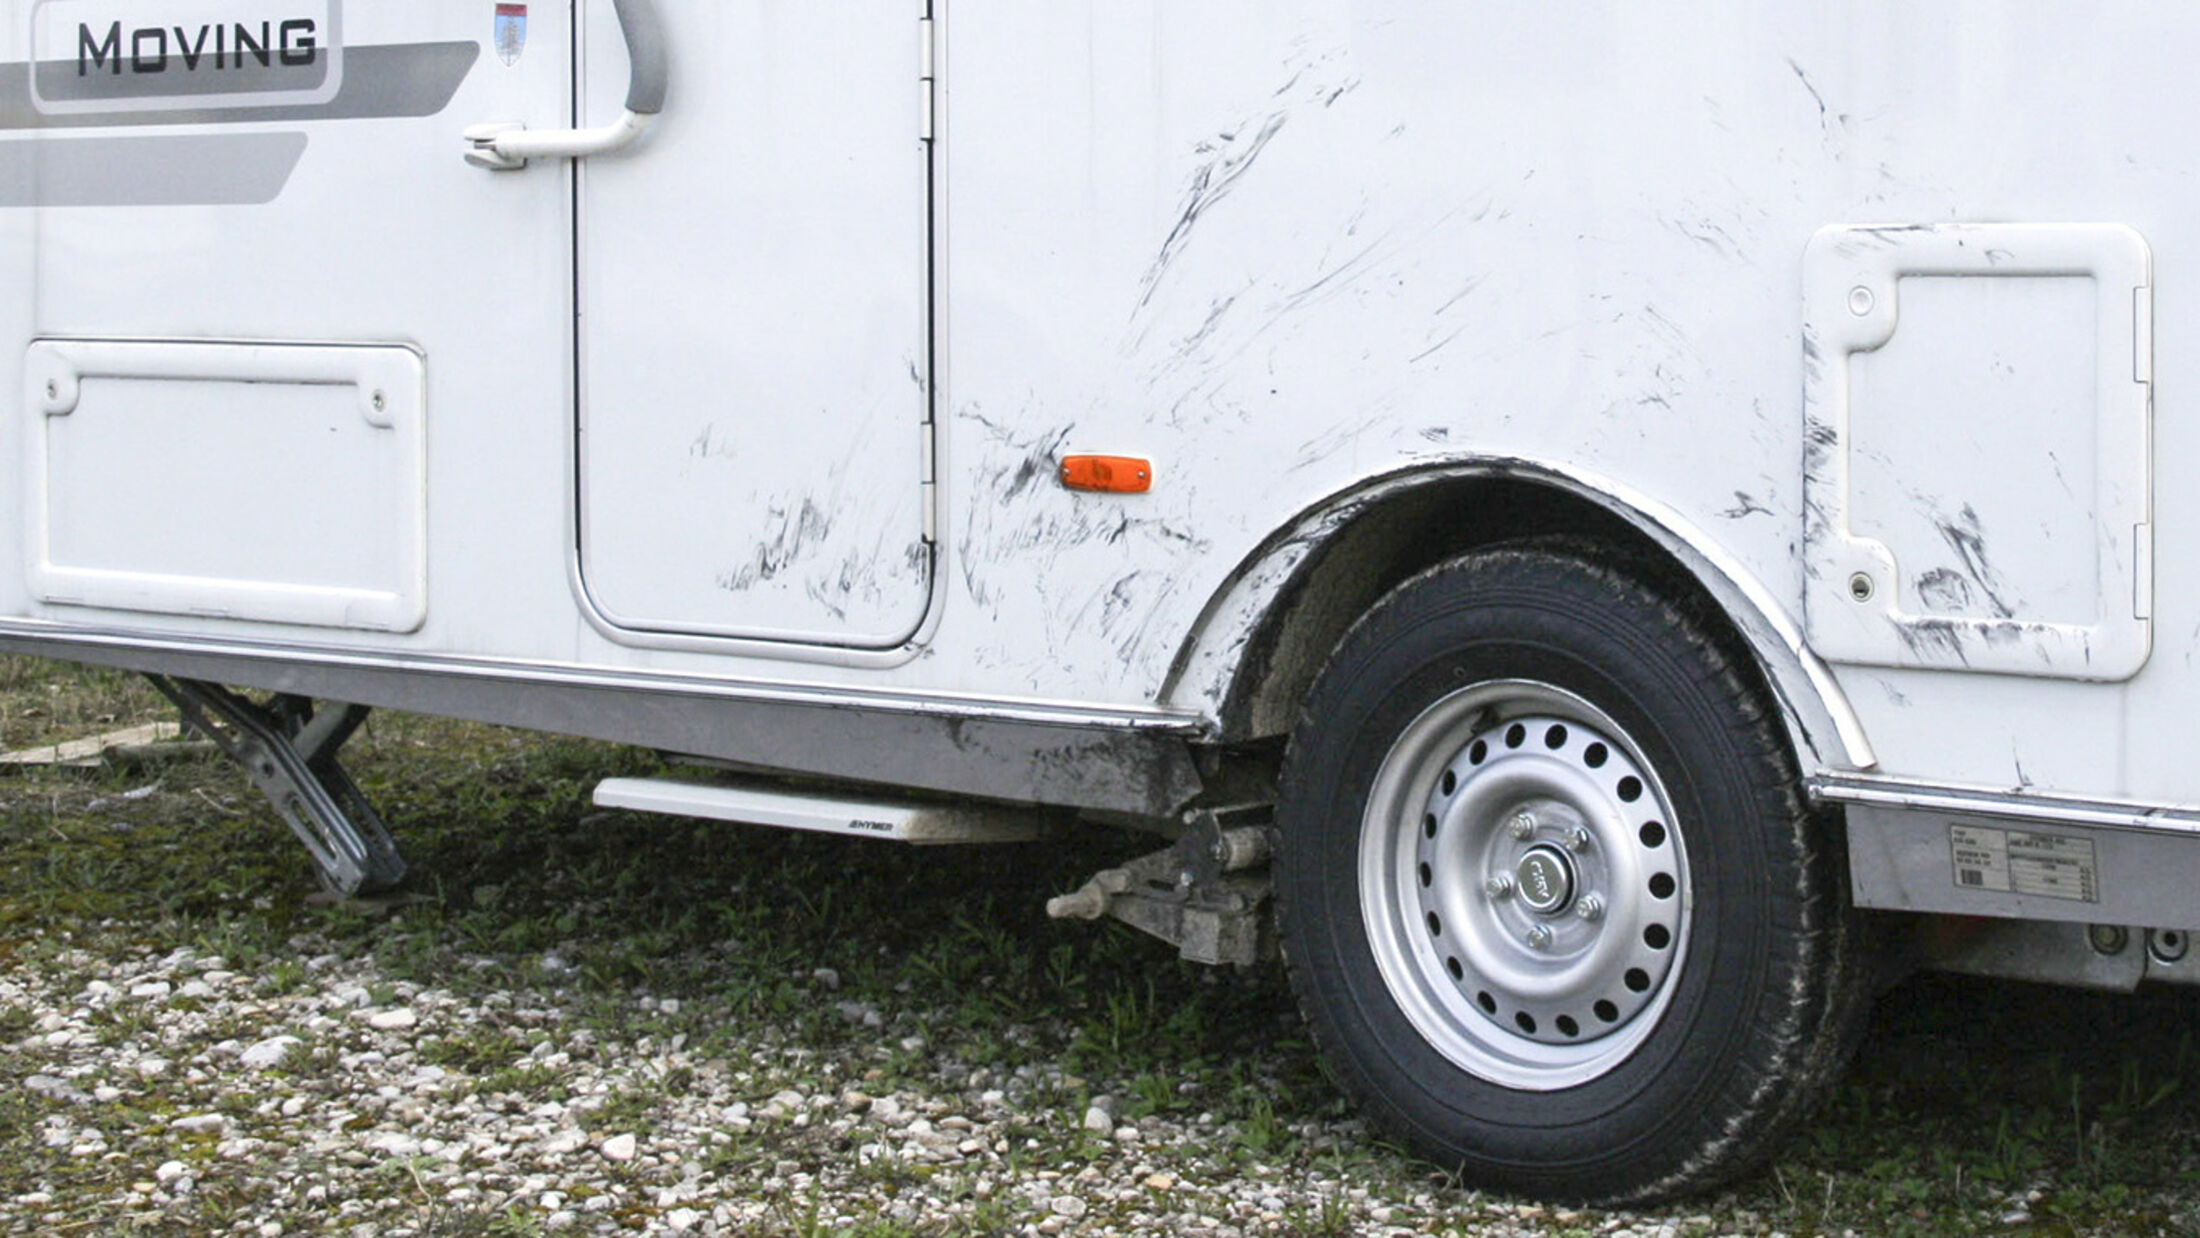 Reifenpanne mit Caravan und Pkw: Caravan aufbocken, Reifen wechseln